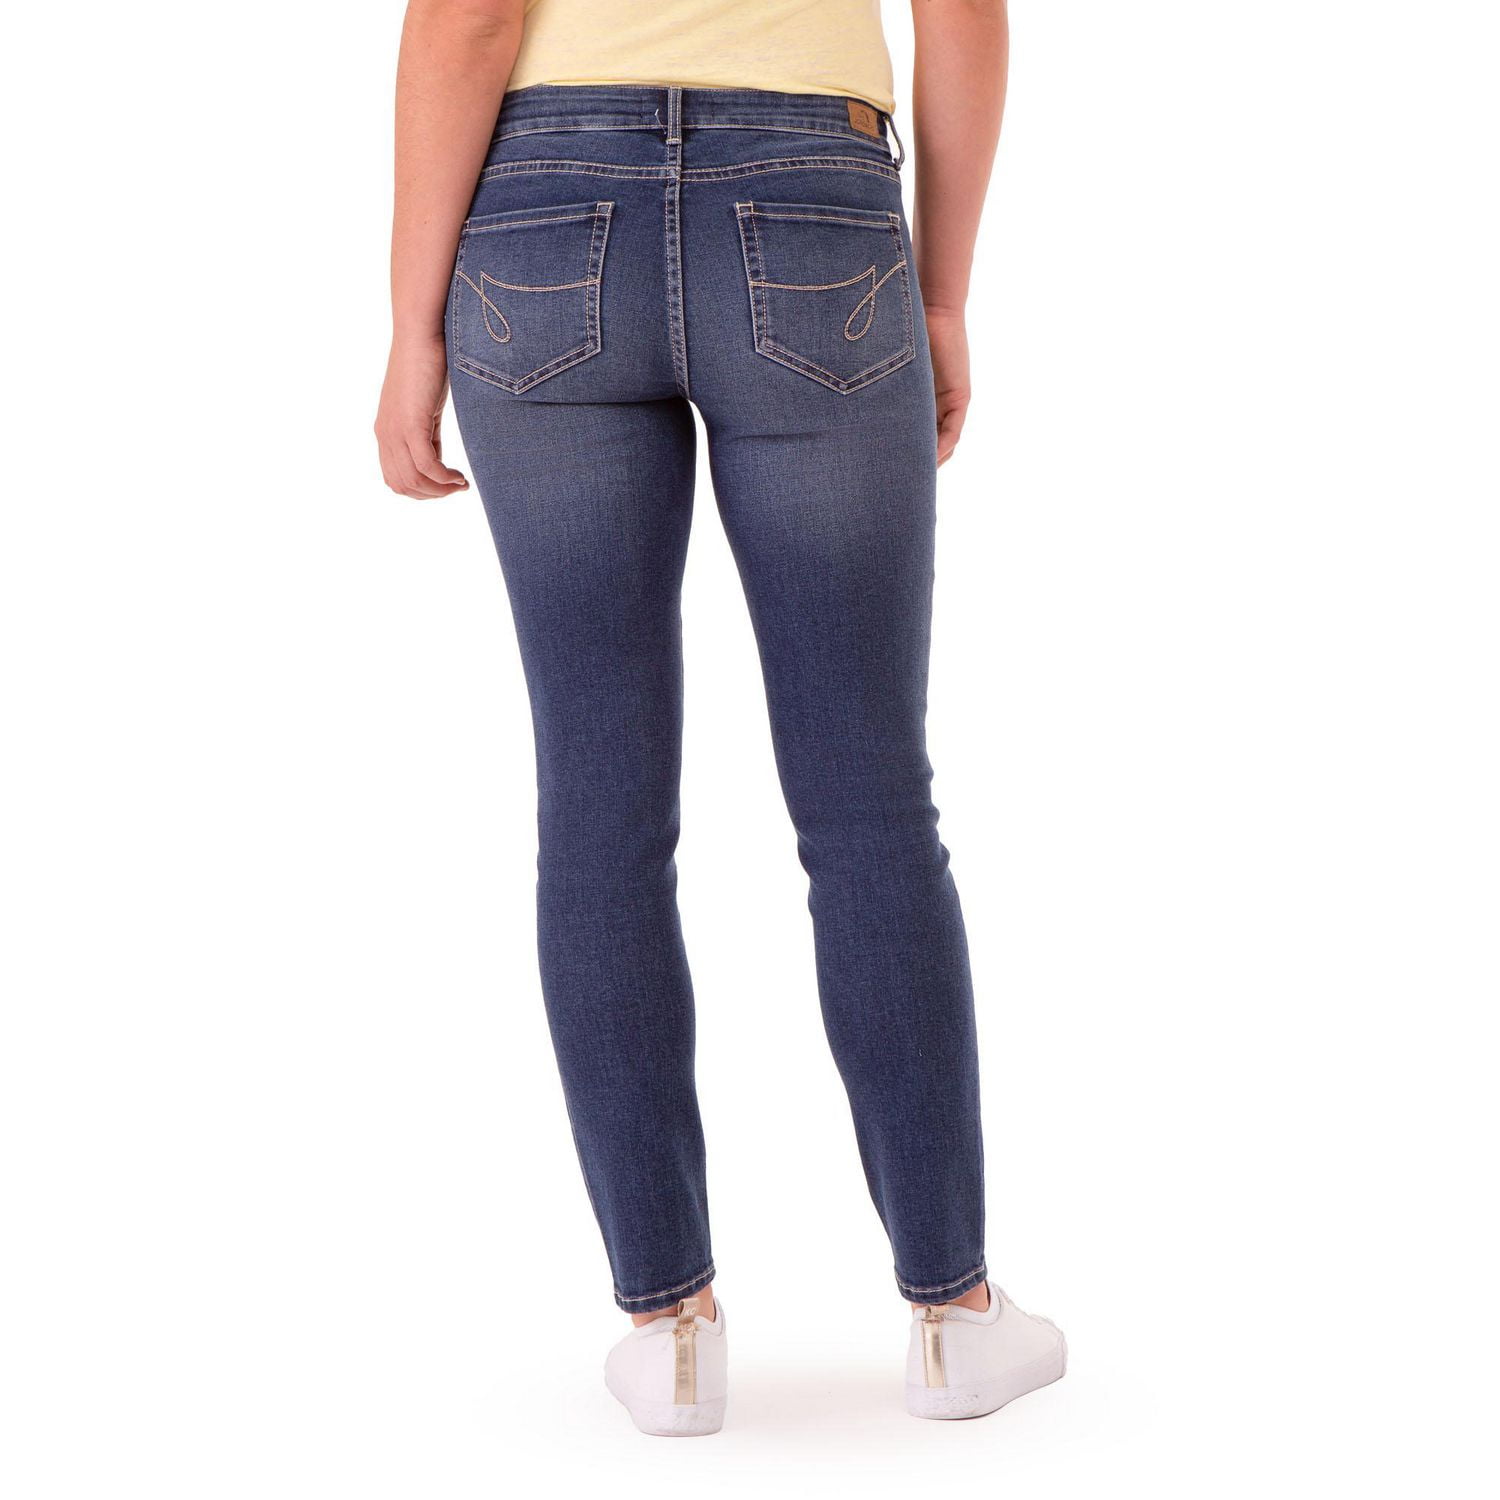 Jordache Women's High Rise Pull On Super Skinny Capri Jeans